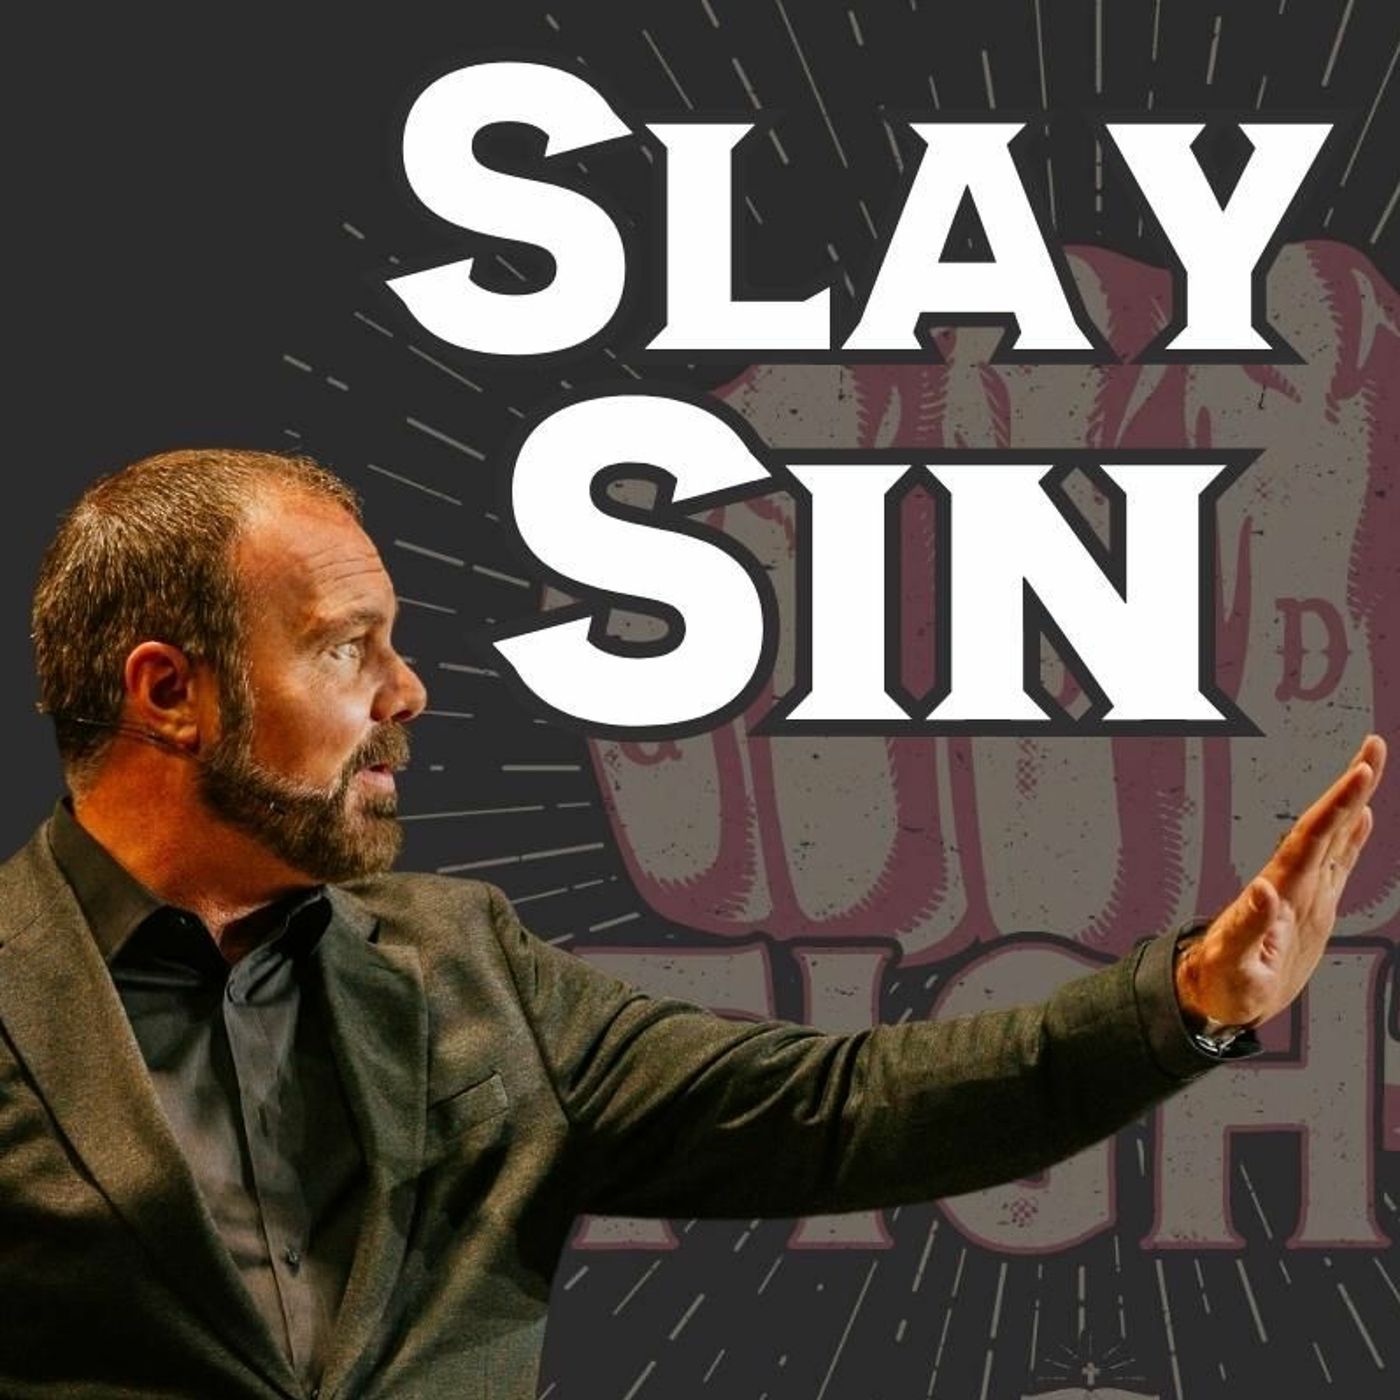 How Do You Slay Sin?